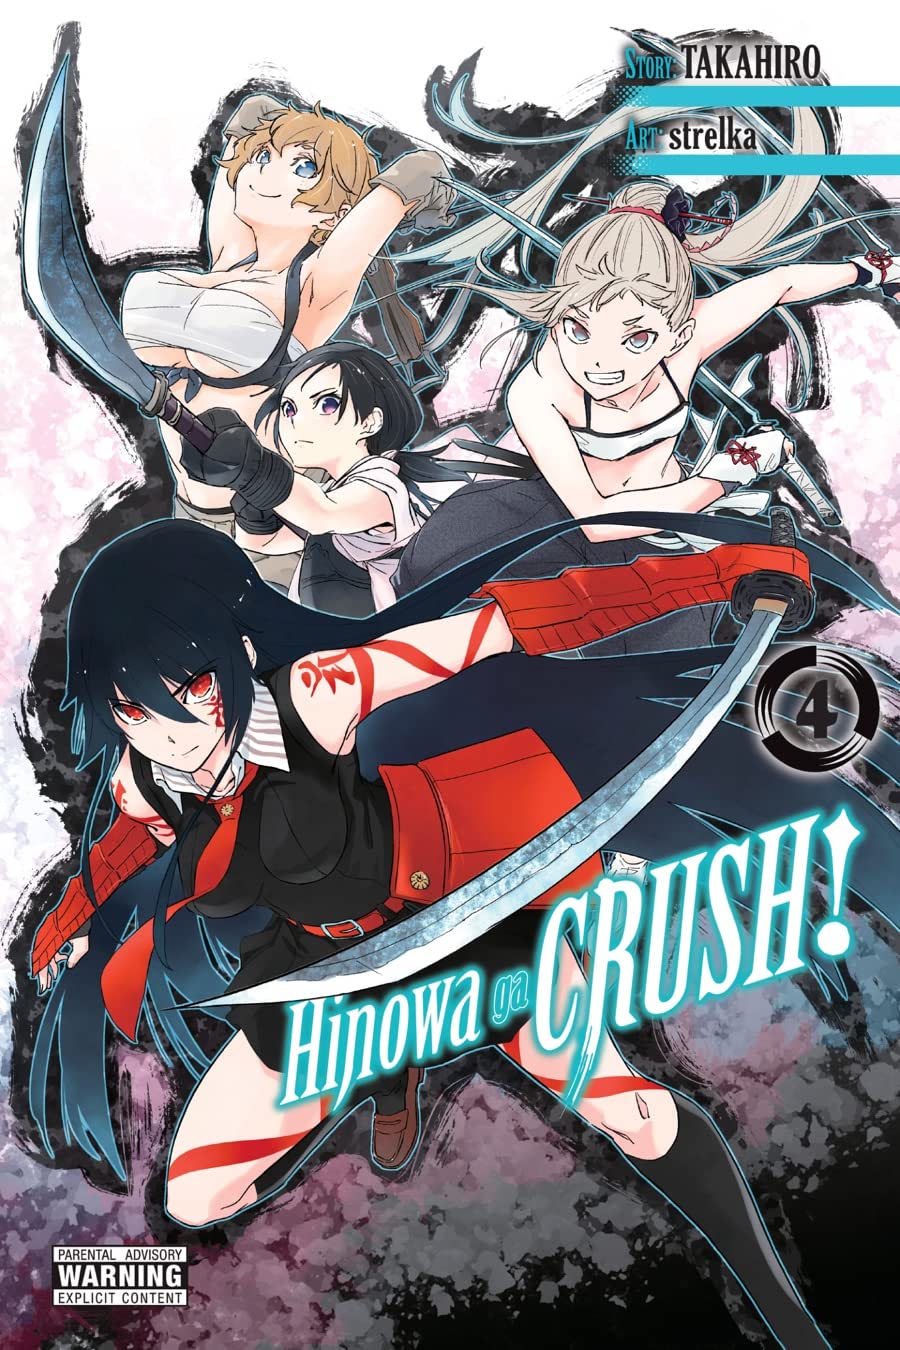 Hinowa ga Crush! Volume 4 | Takahiro